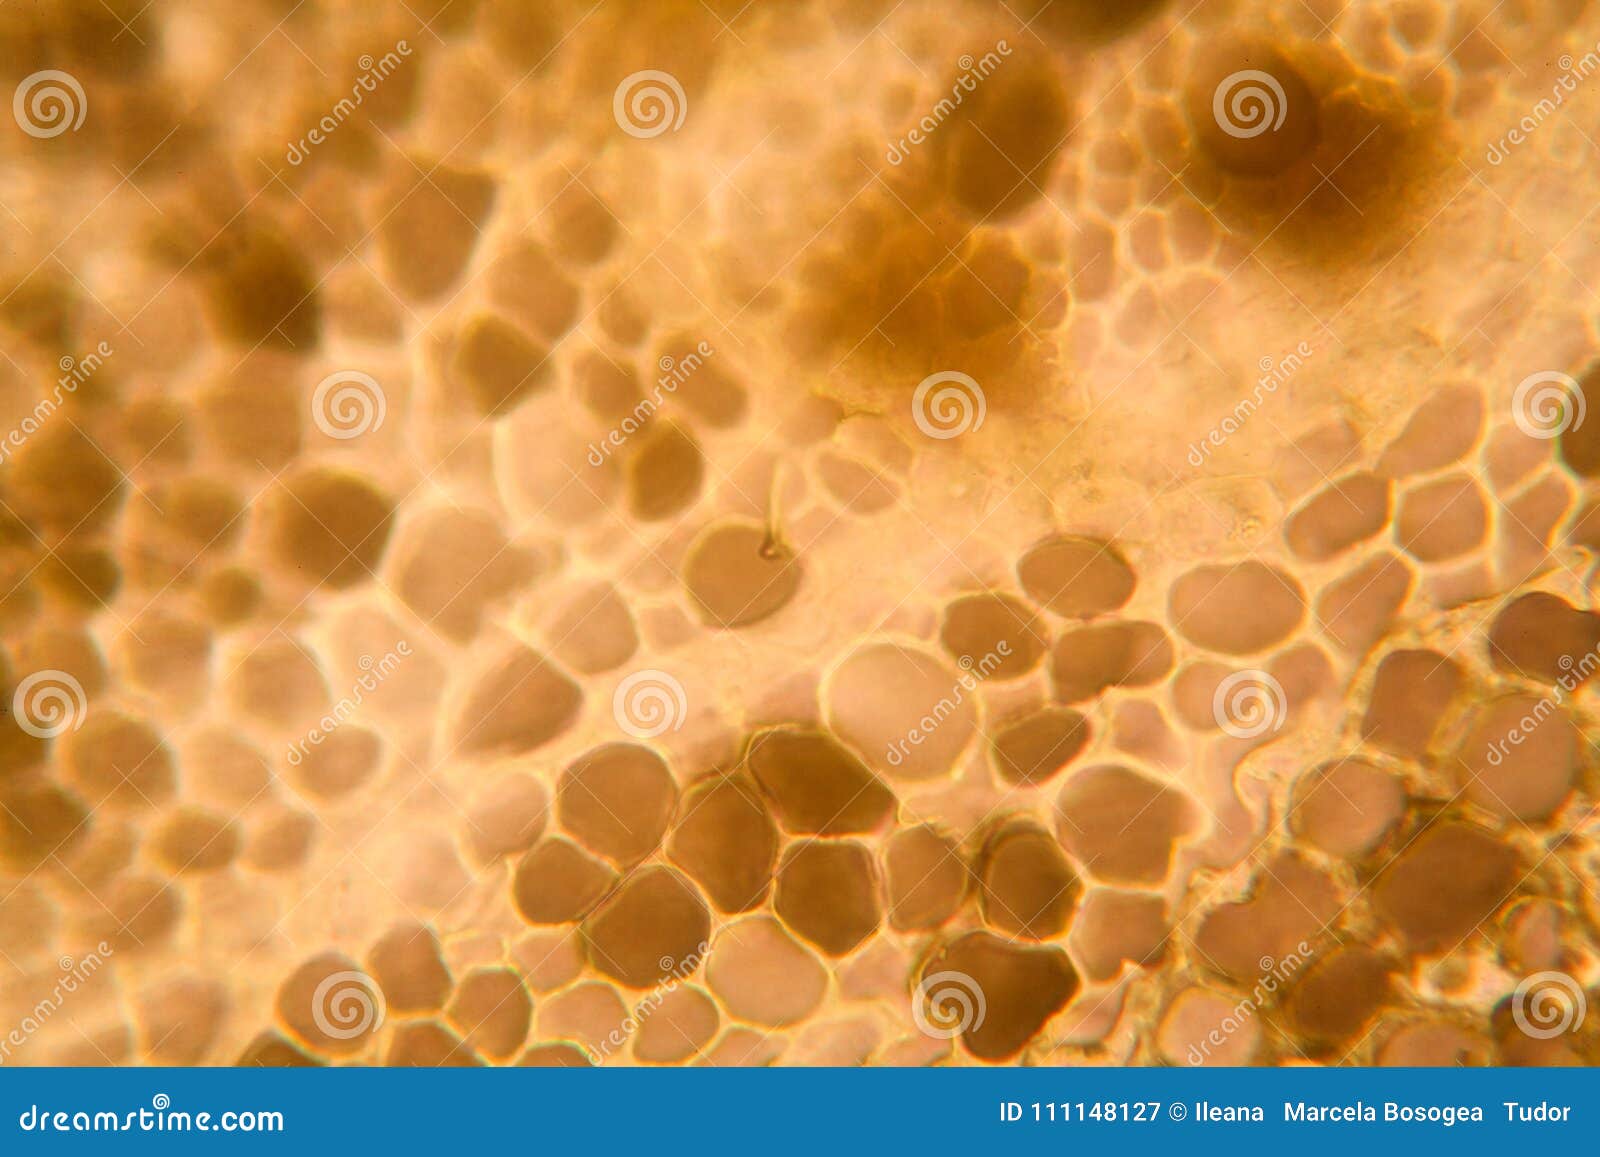 Клетки Яблока Под Микроскопом Фото